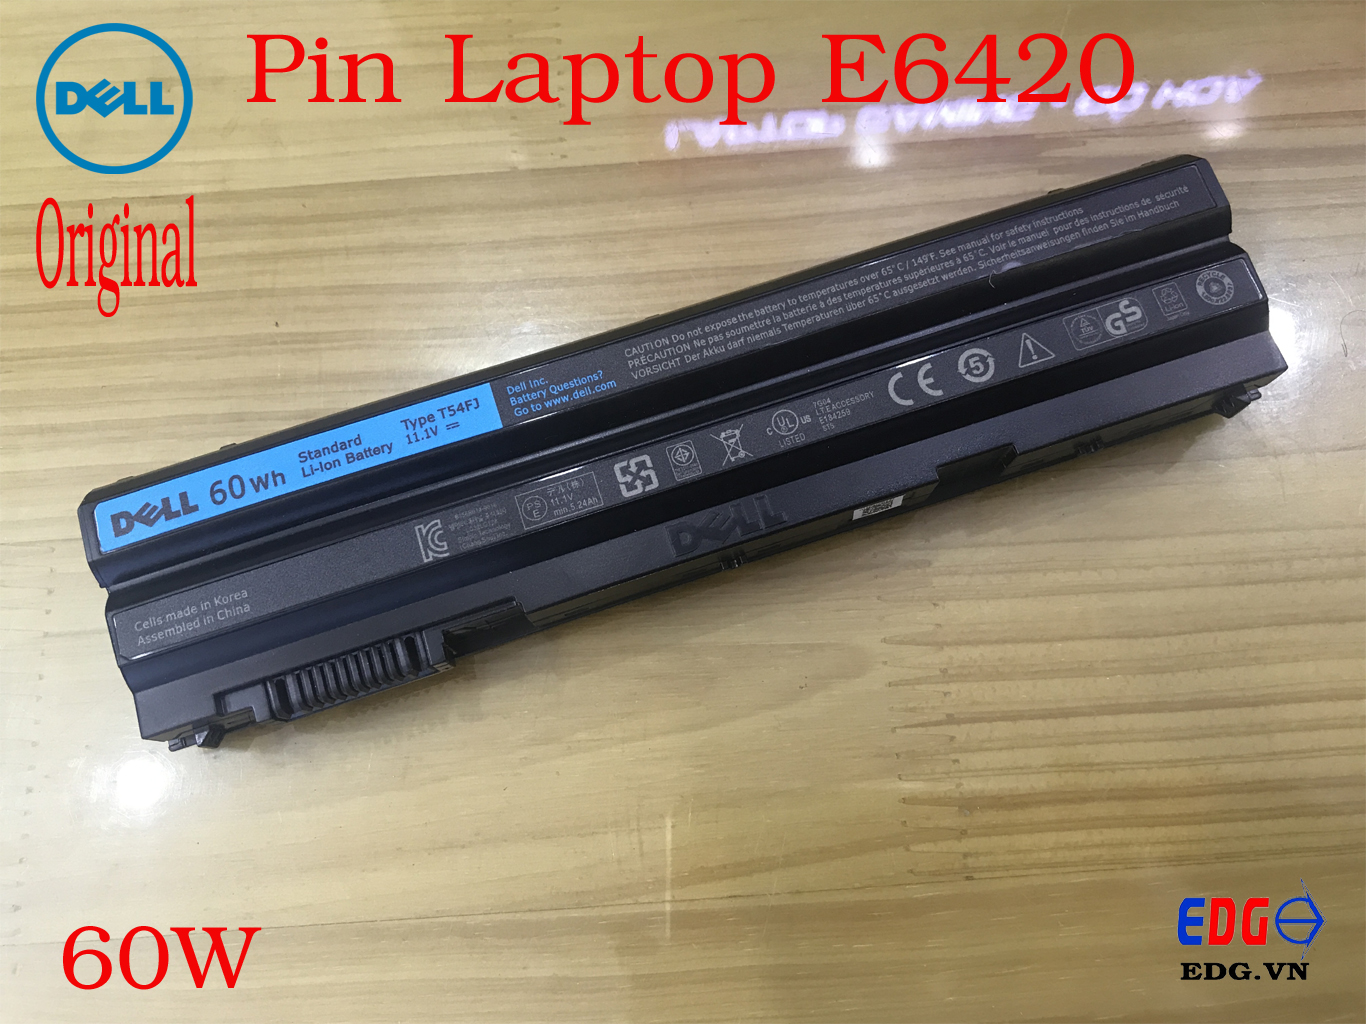 Pin Laptop Dell E6420 Original – 